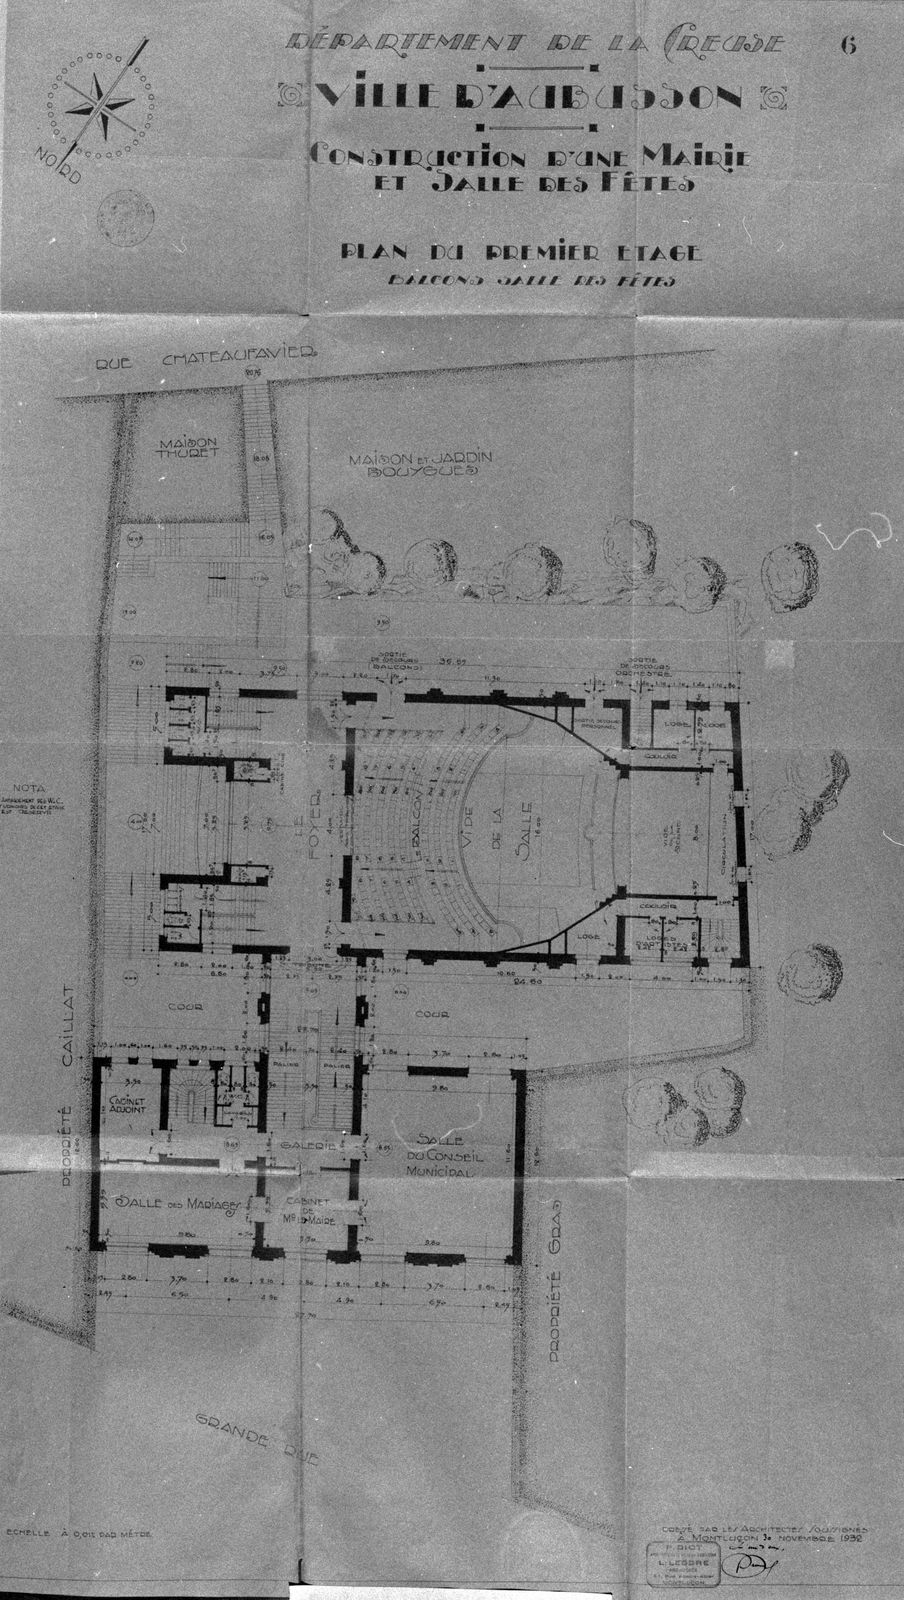 Plan du premier étage (AC Aubusson).